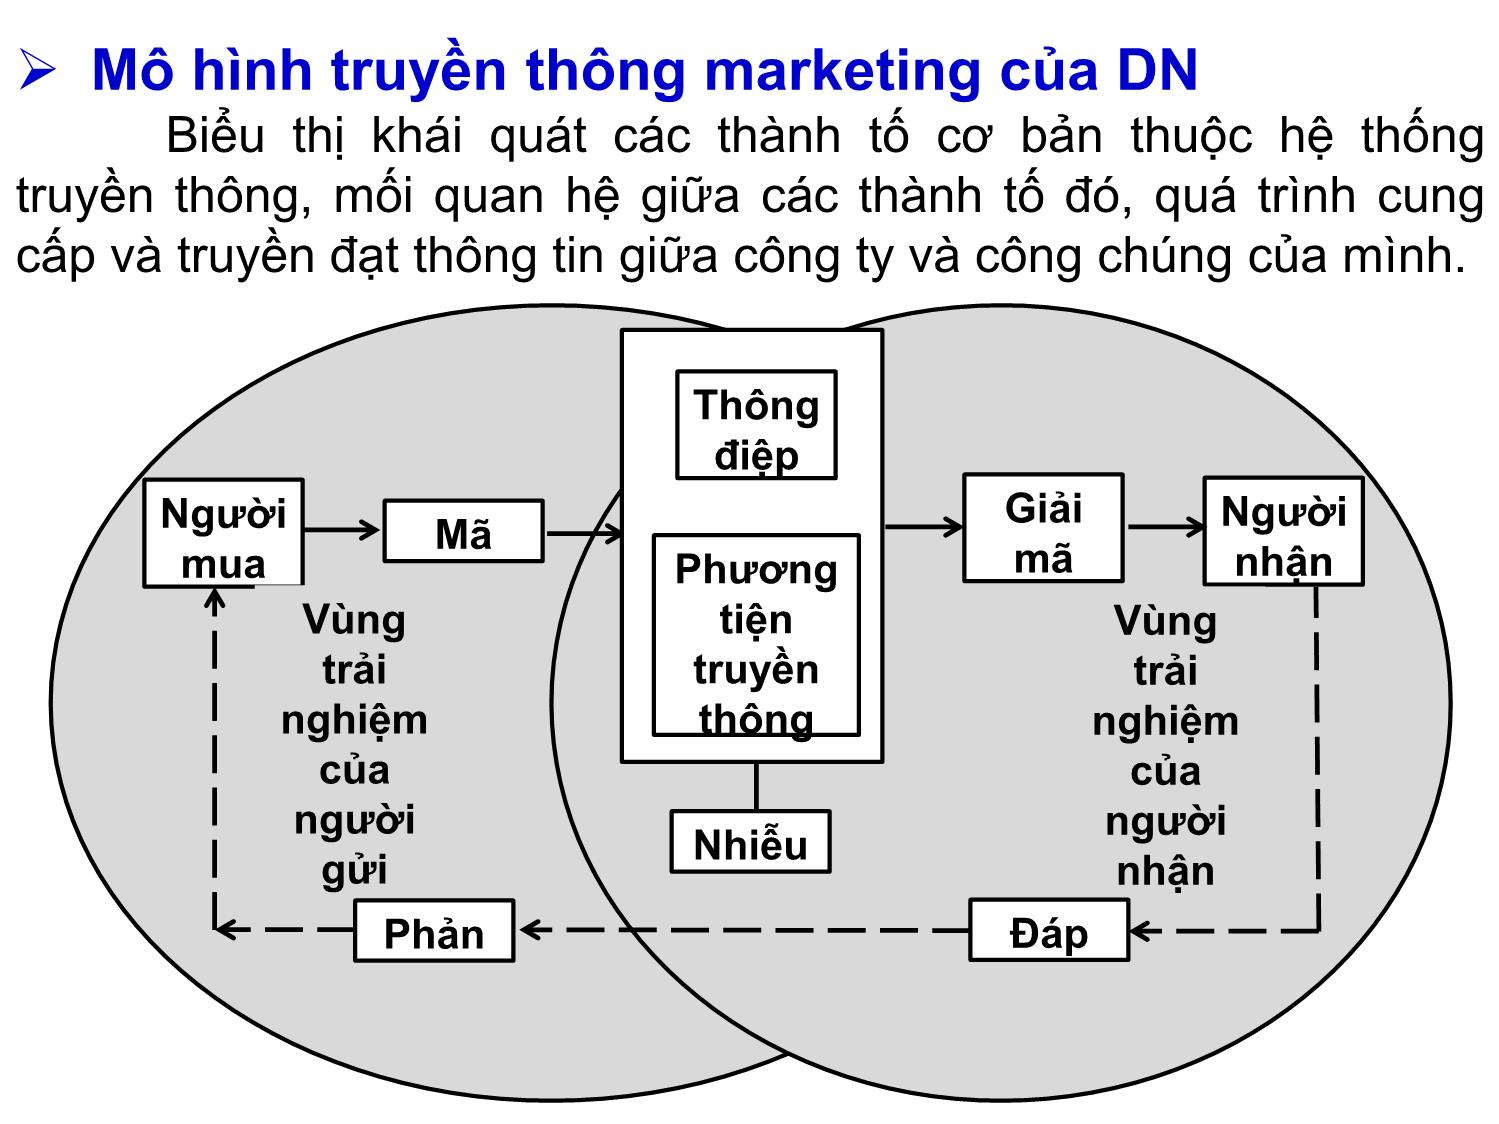 Bài giảng Quản trị marketing - Chương 9: Quản trị truyền thông marketing tích hợp (Integrated Marketing Communications - IMC) - Nguyễn Thị Phương Dung trang 8